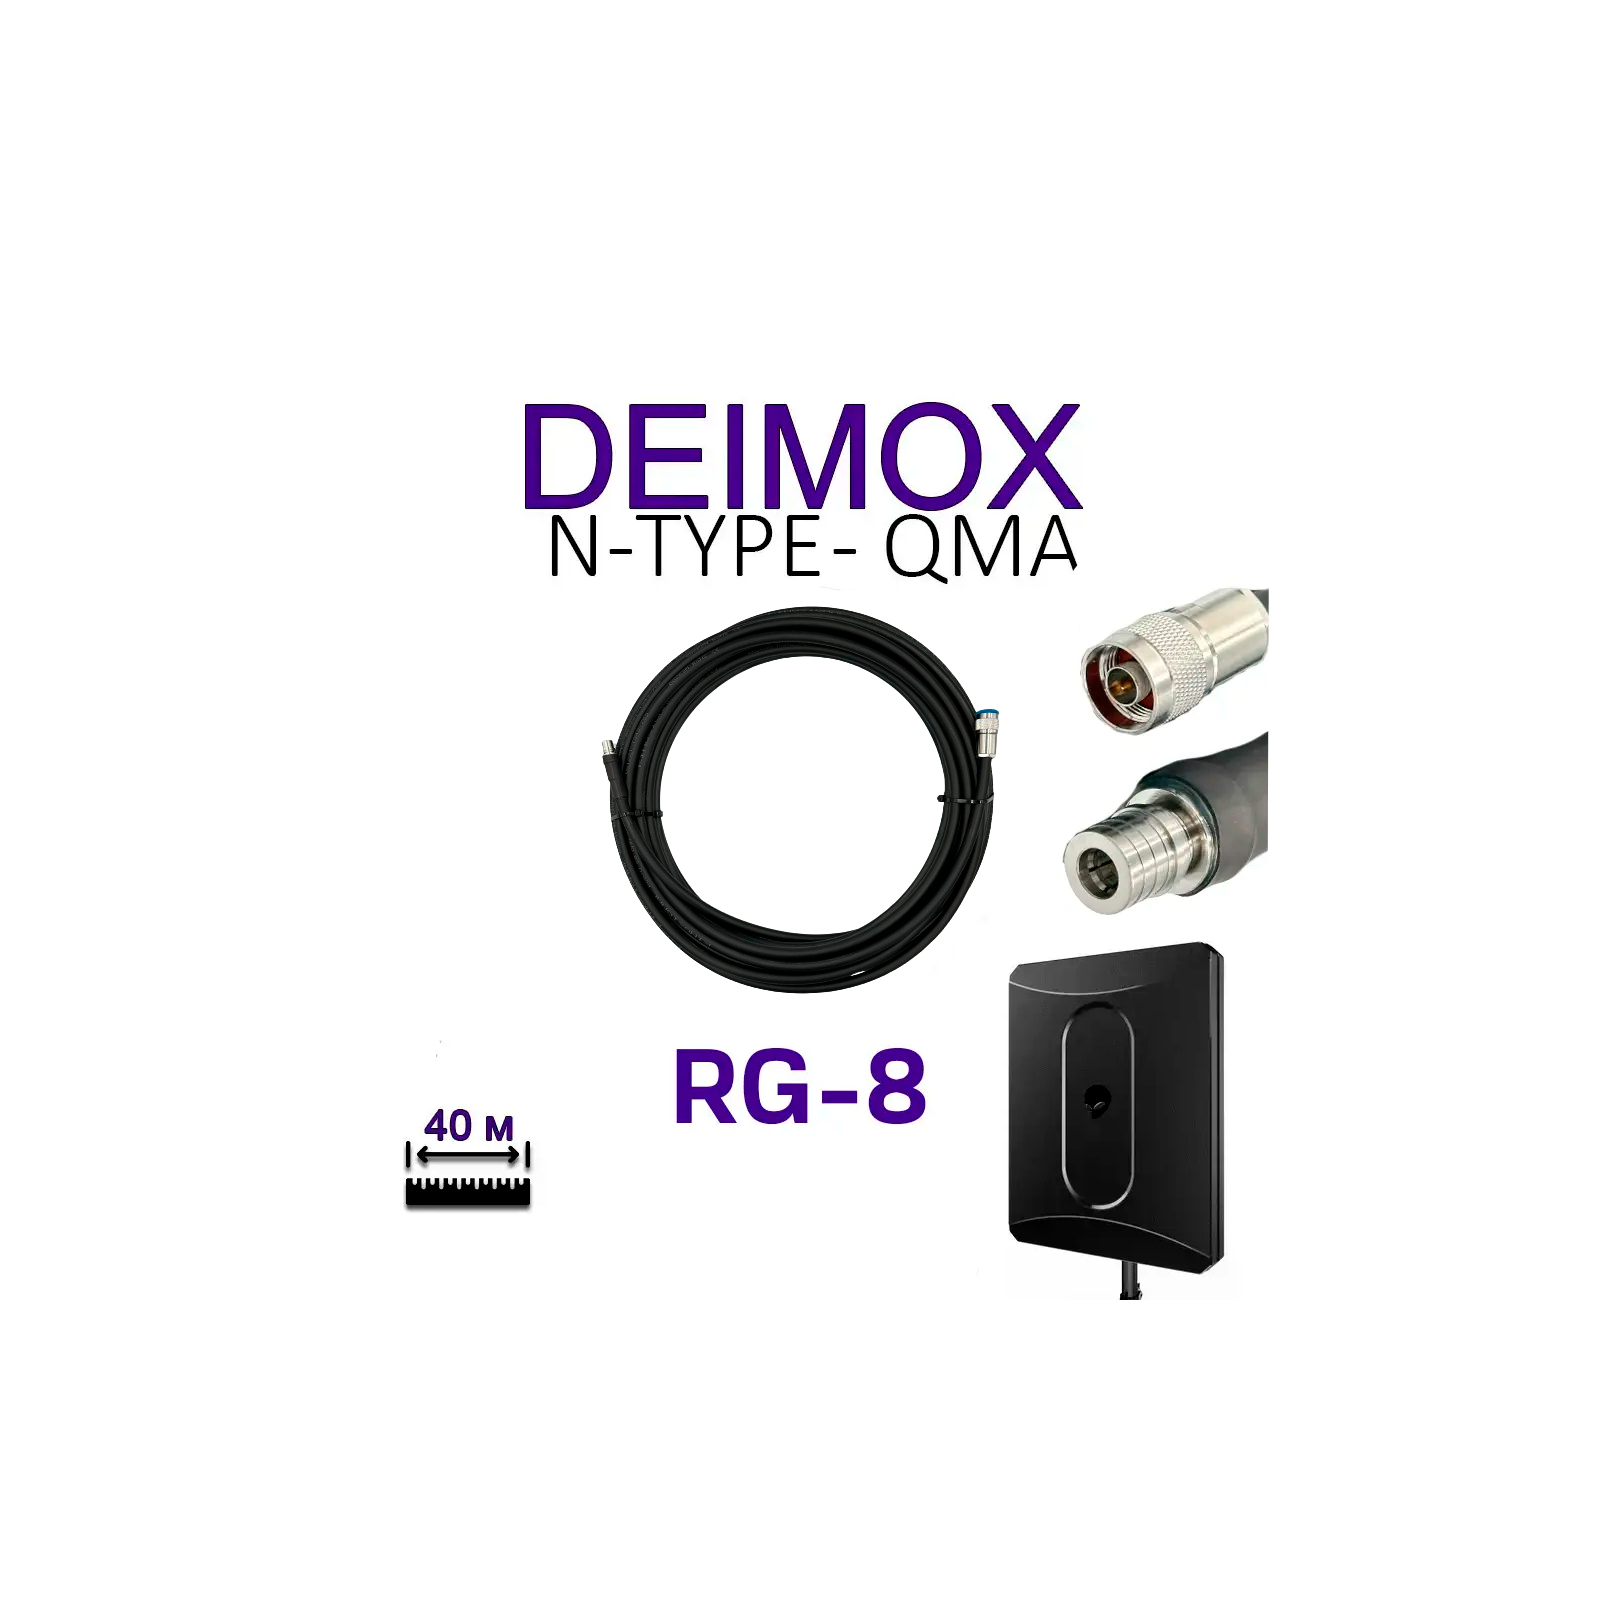 Кабель для дрона ALIENTECH RG8 для Deimox, QMA -N-type (2 шт) (Deimox, QMA -N-type) зображення 3